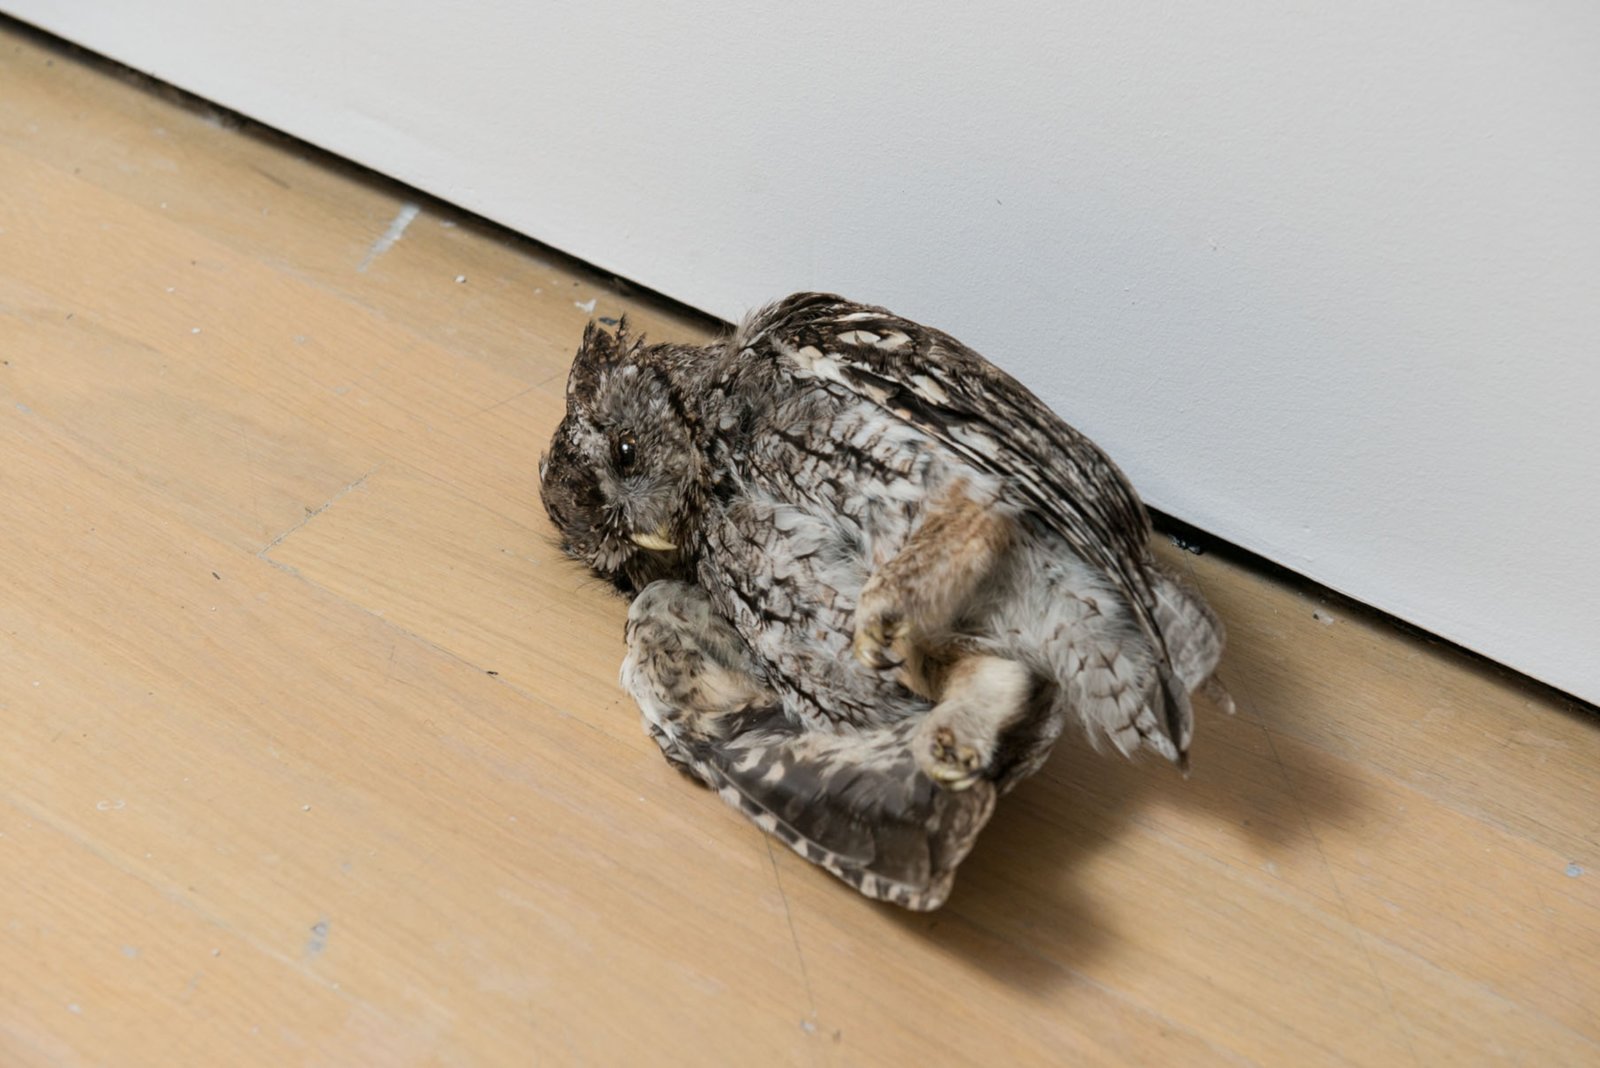 Abbas Akhavan, Fatigues, 2014, taxidermy animals, dimensions variable. Installation view, L’avenir, La Biennale de Montréal 2014, Musée d’art contemporain, Montreal, Canada